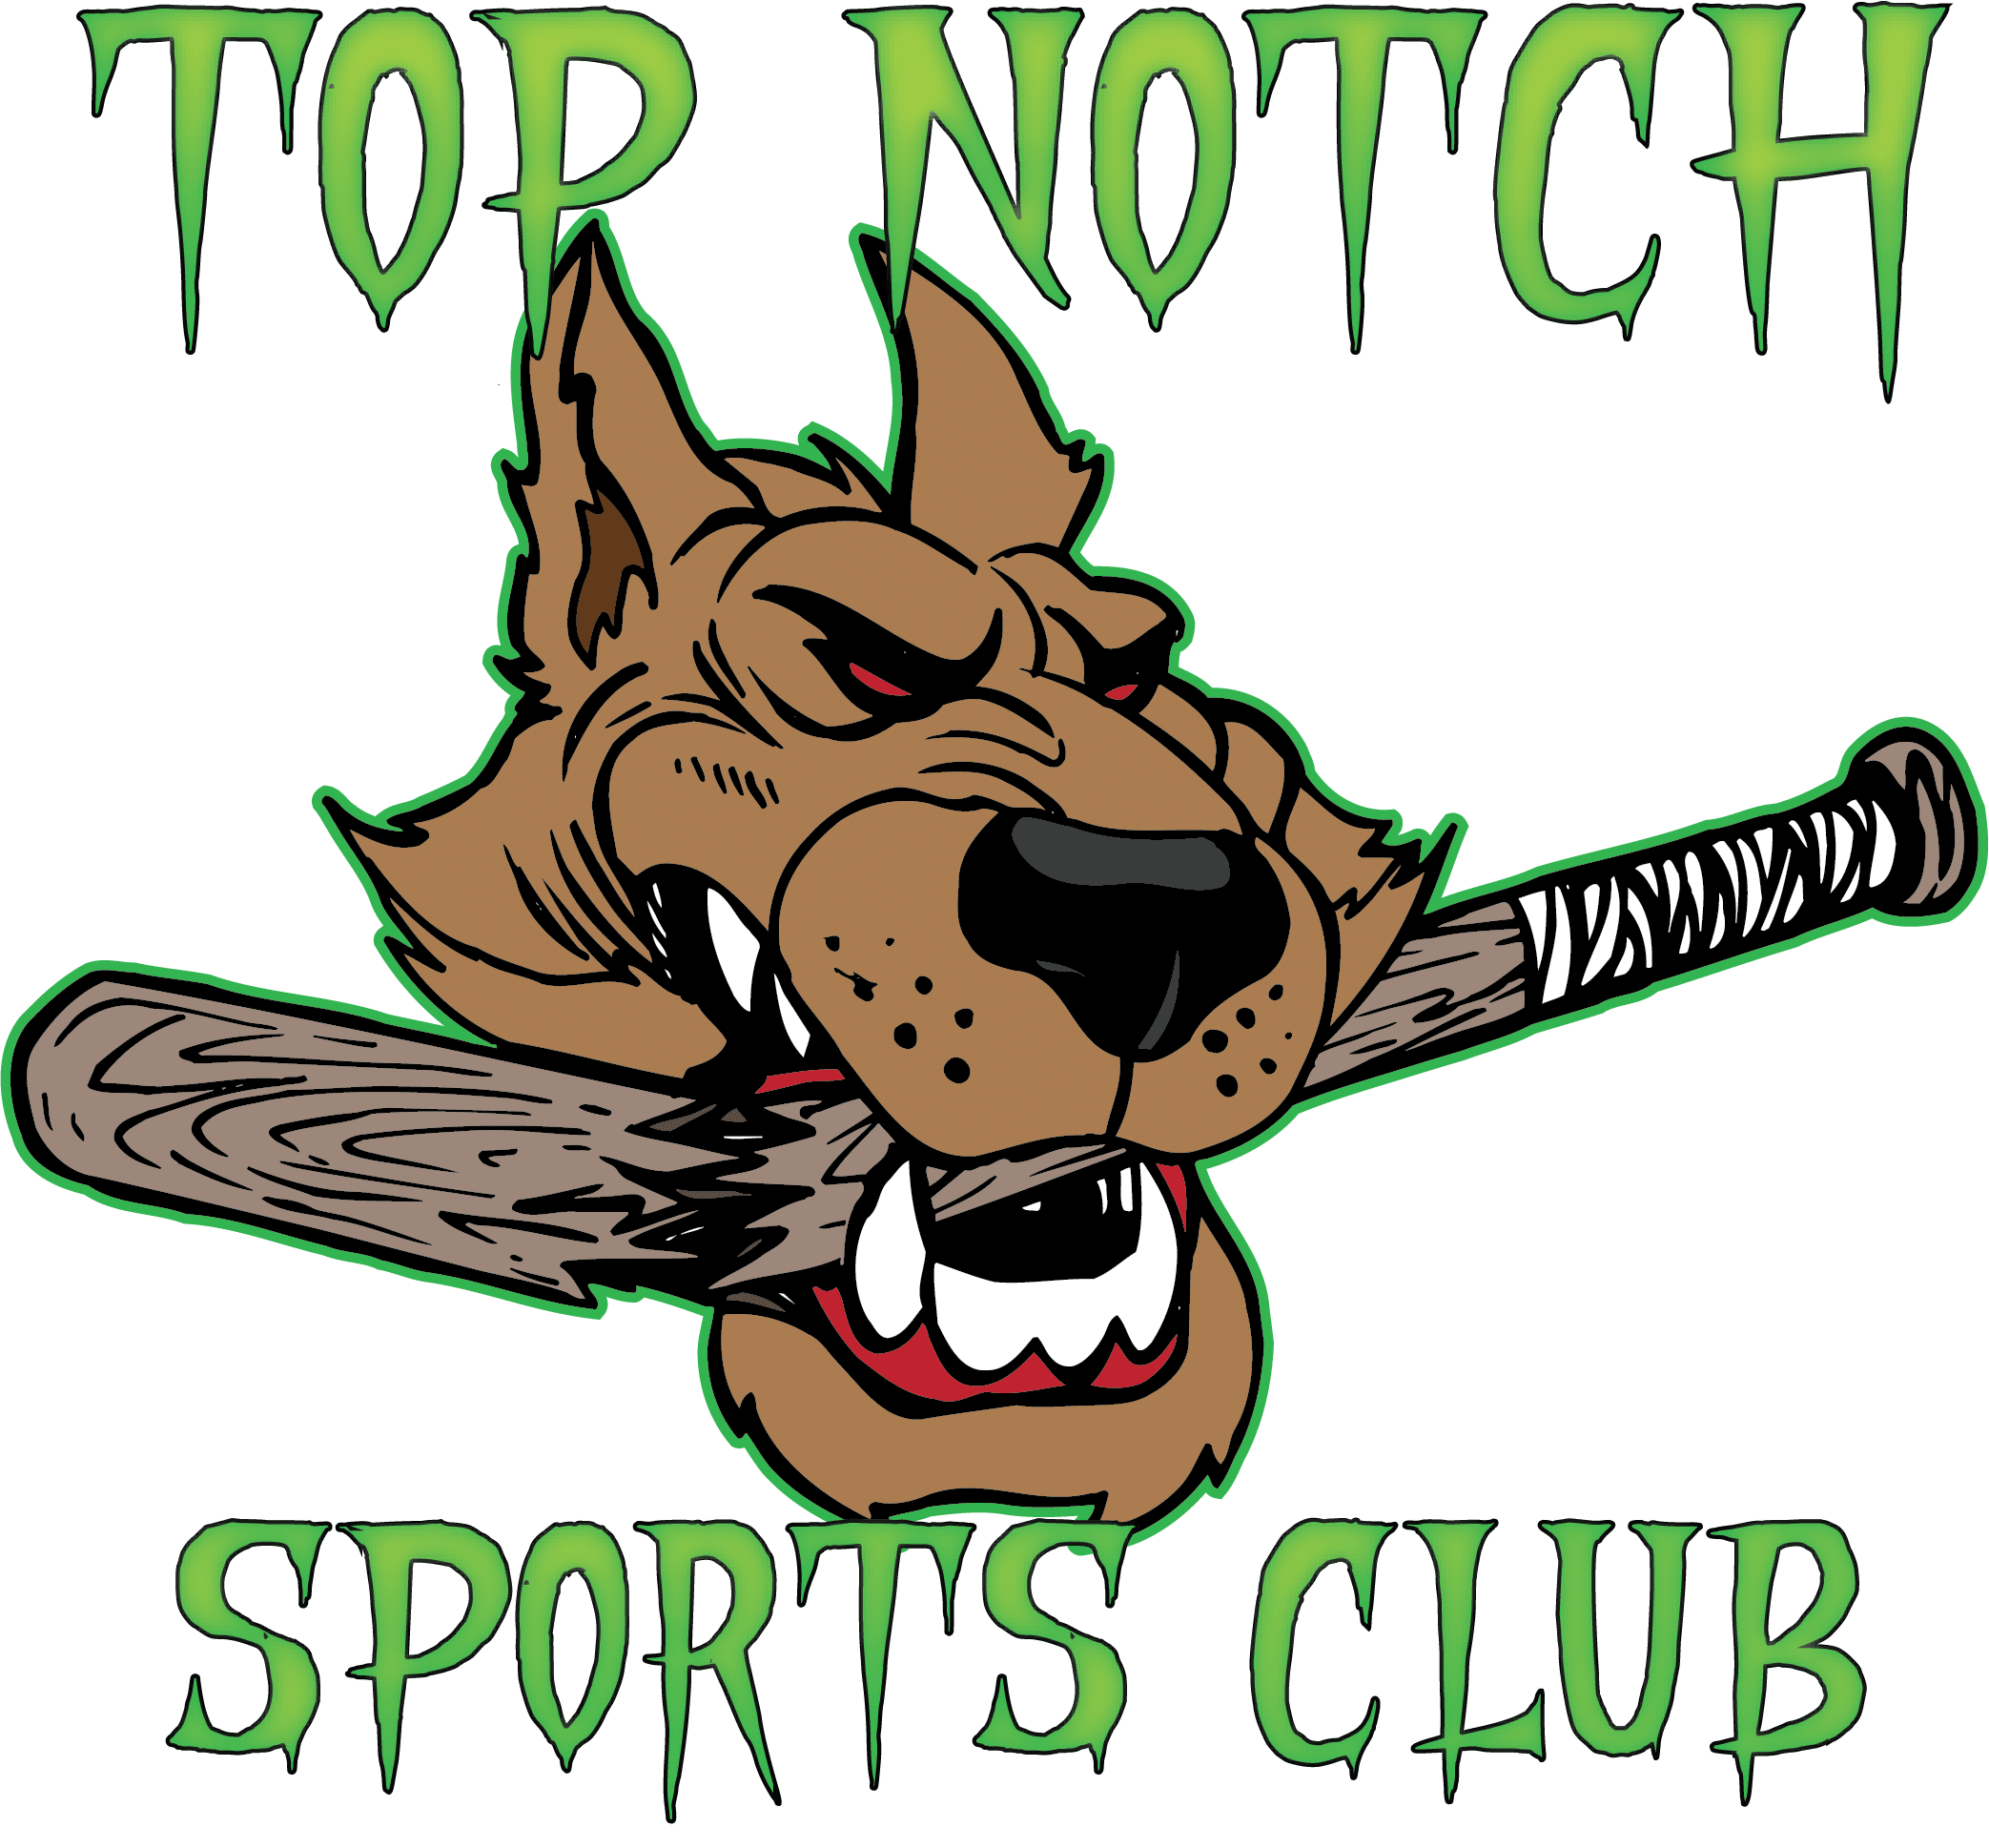 Top Notch Sports Club logo